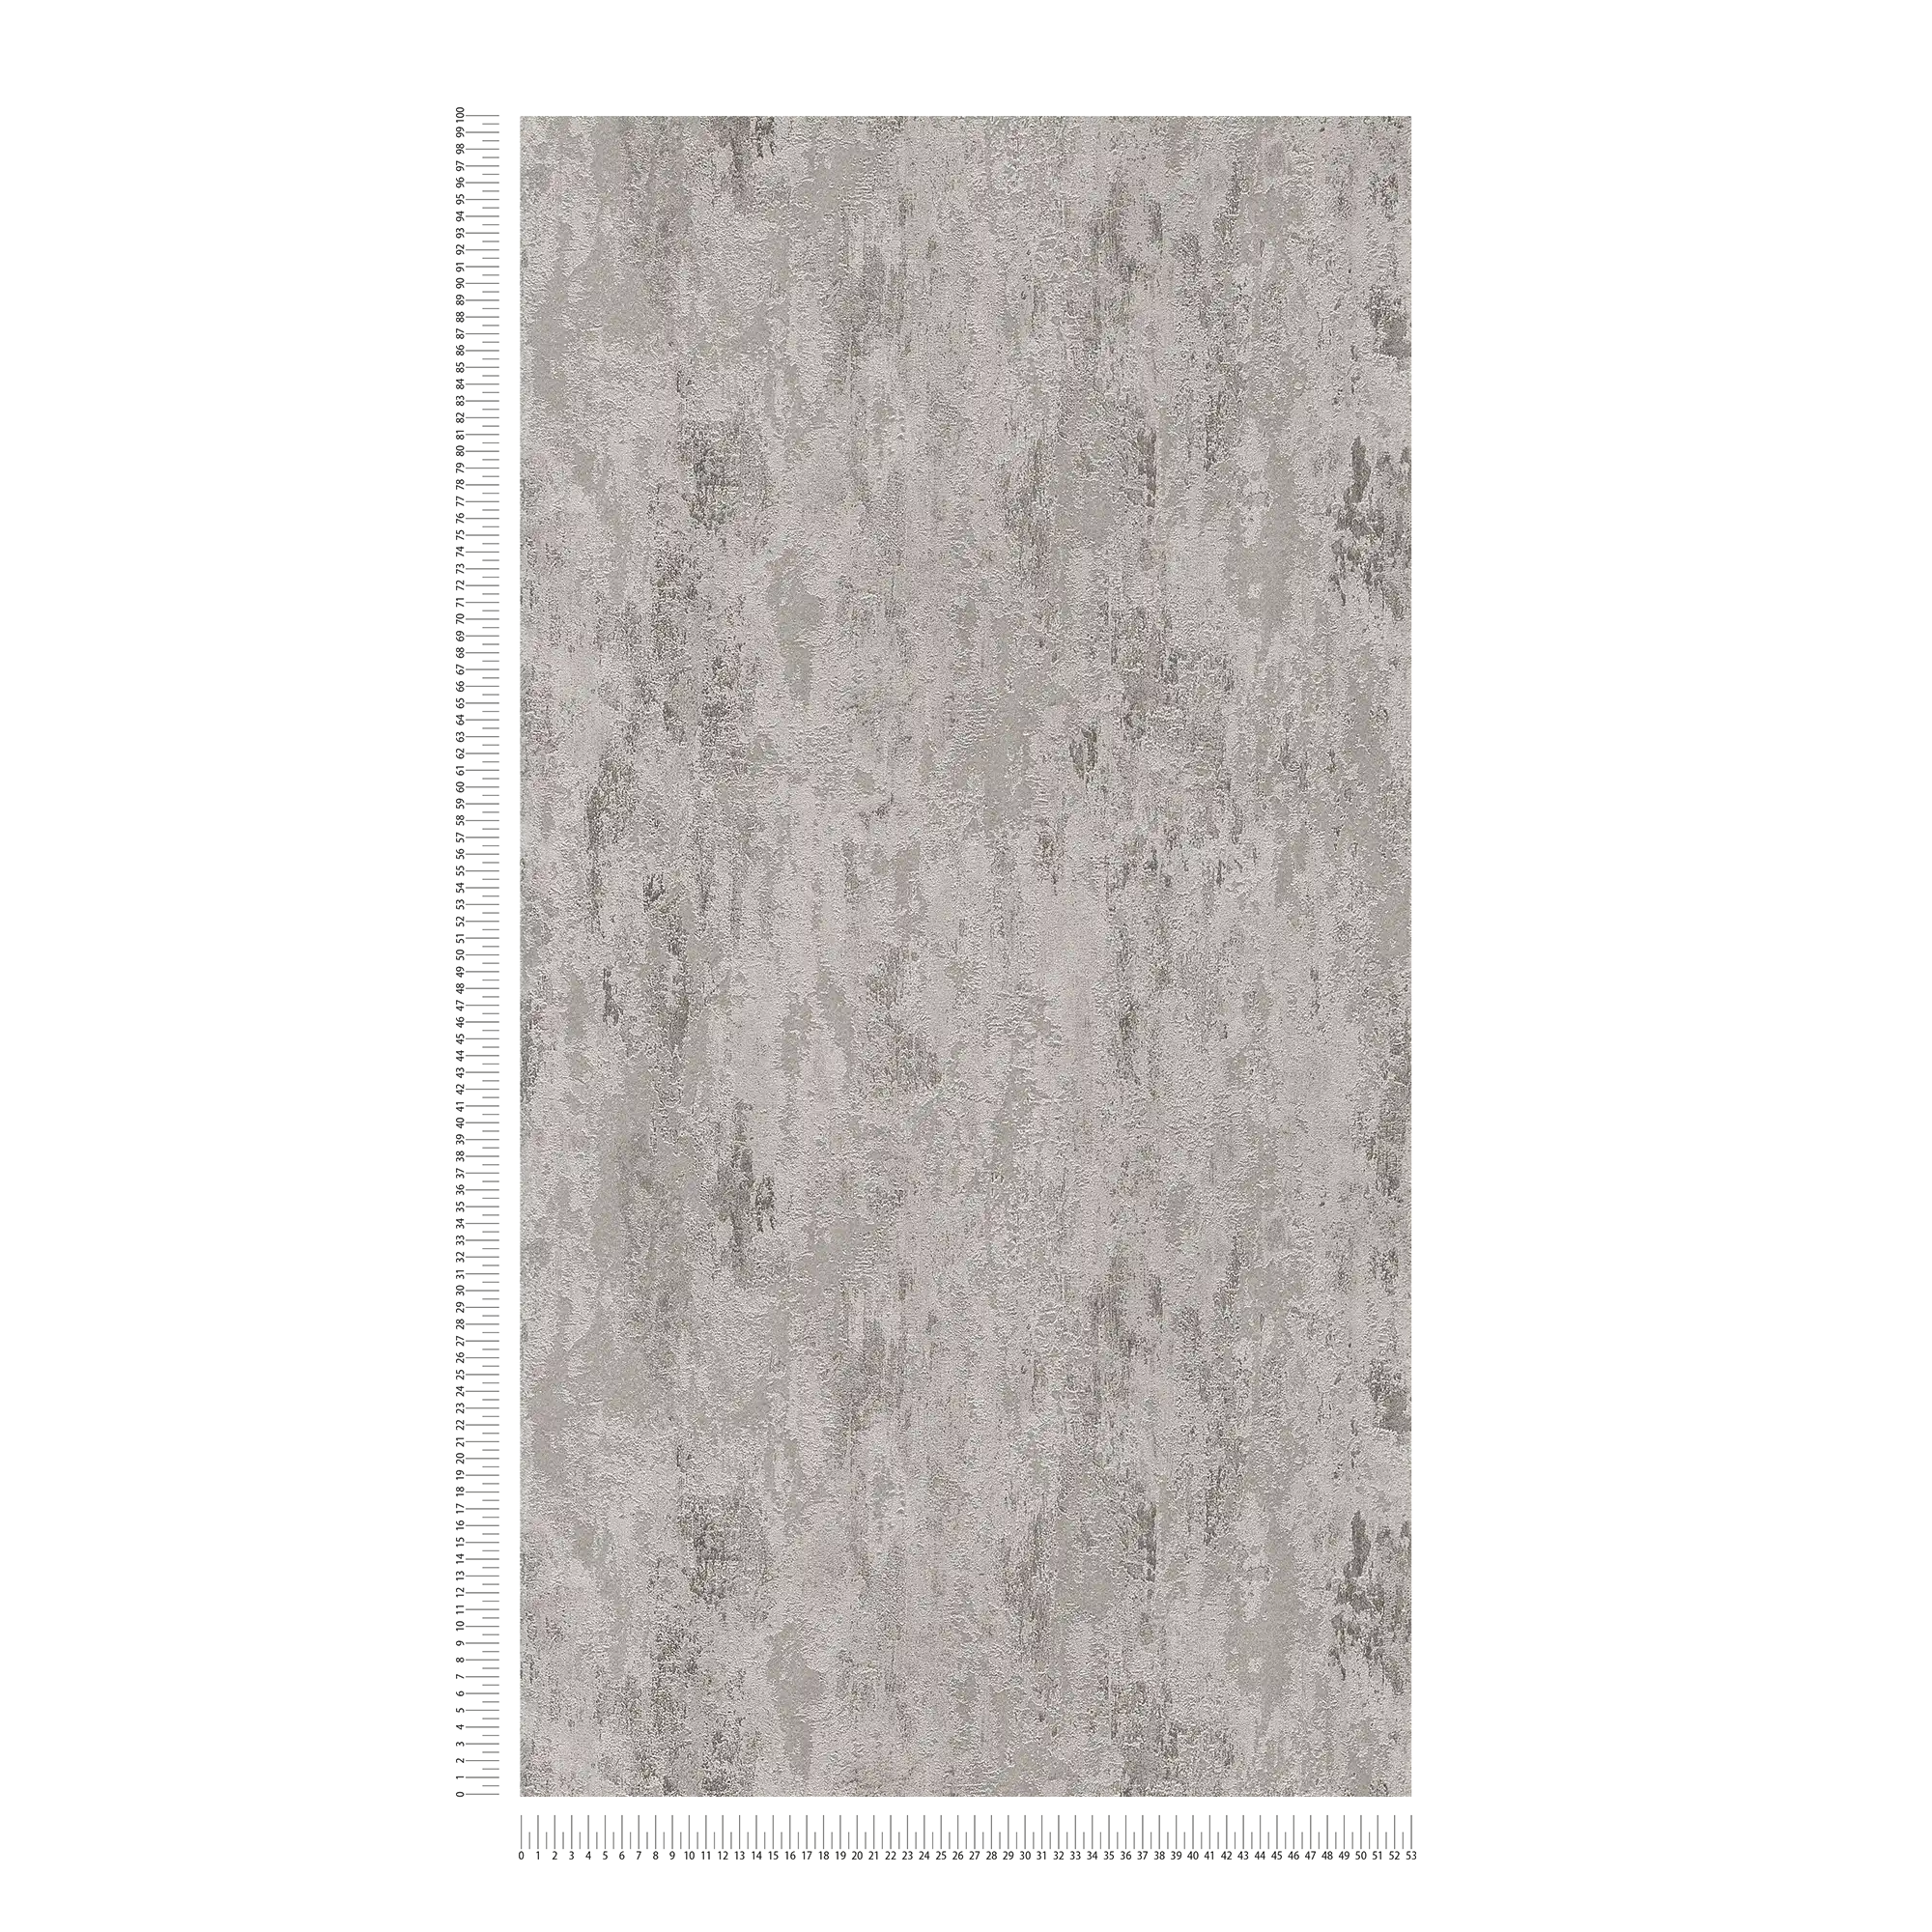             Papel pintado no tejido de color óxido con textura - gris, plata
        